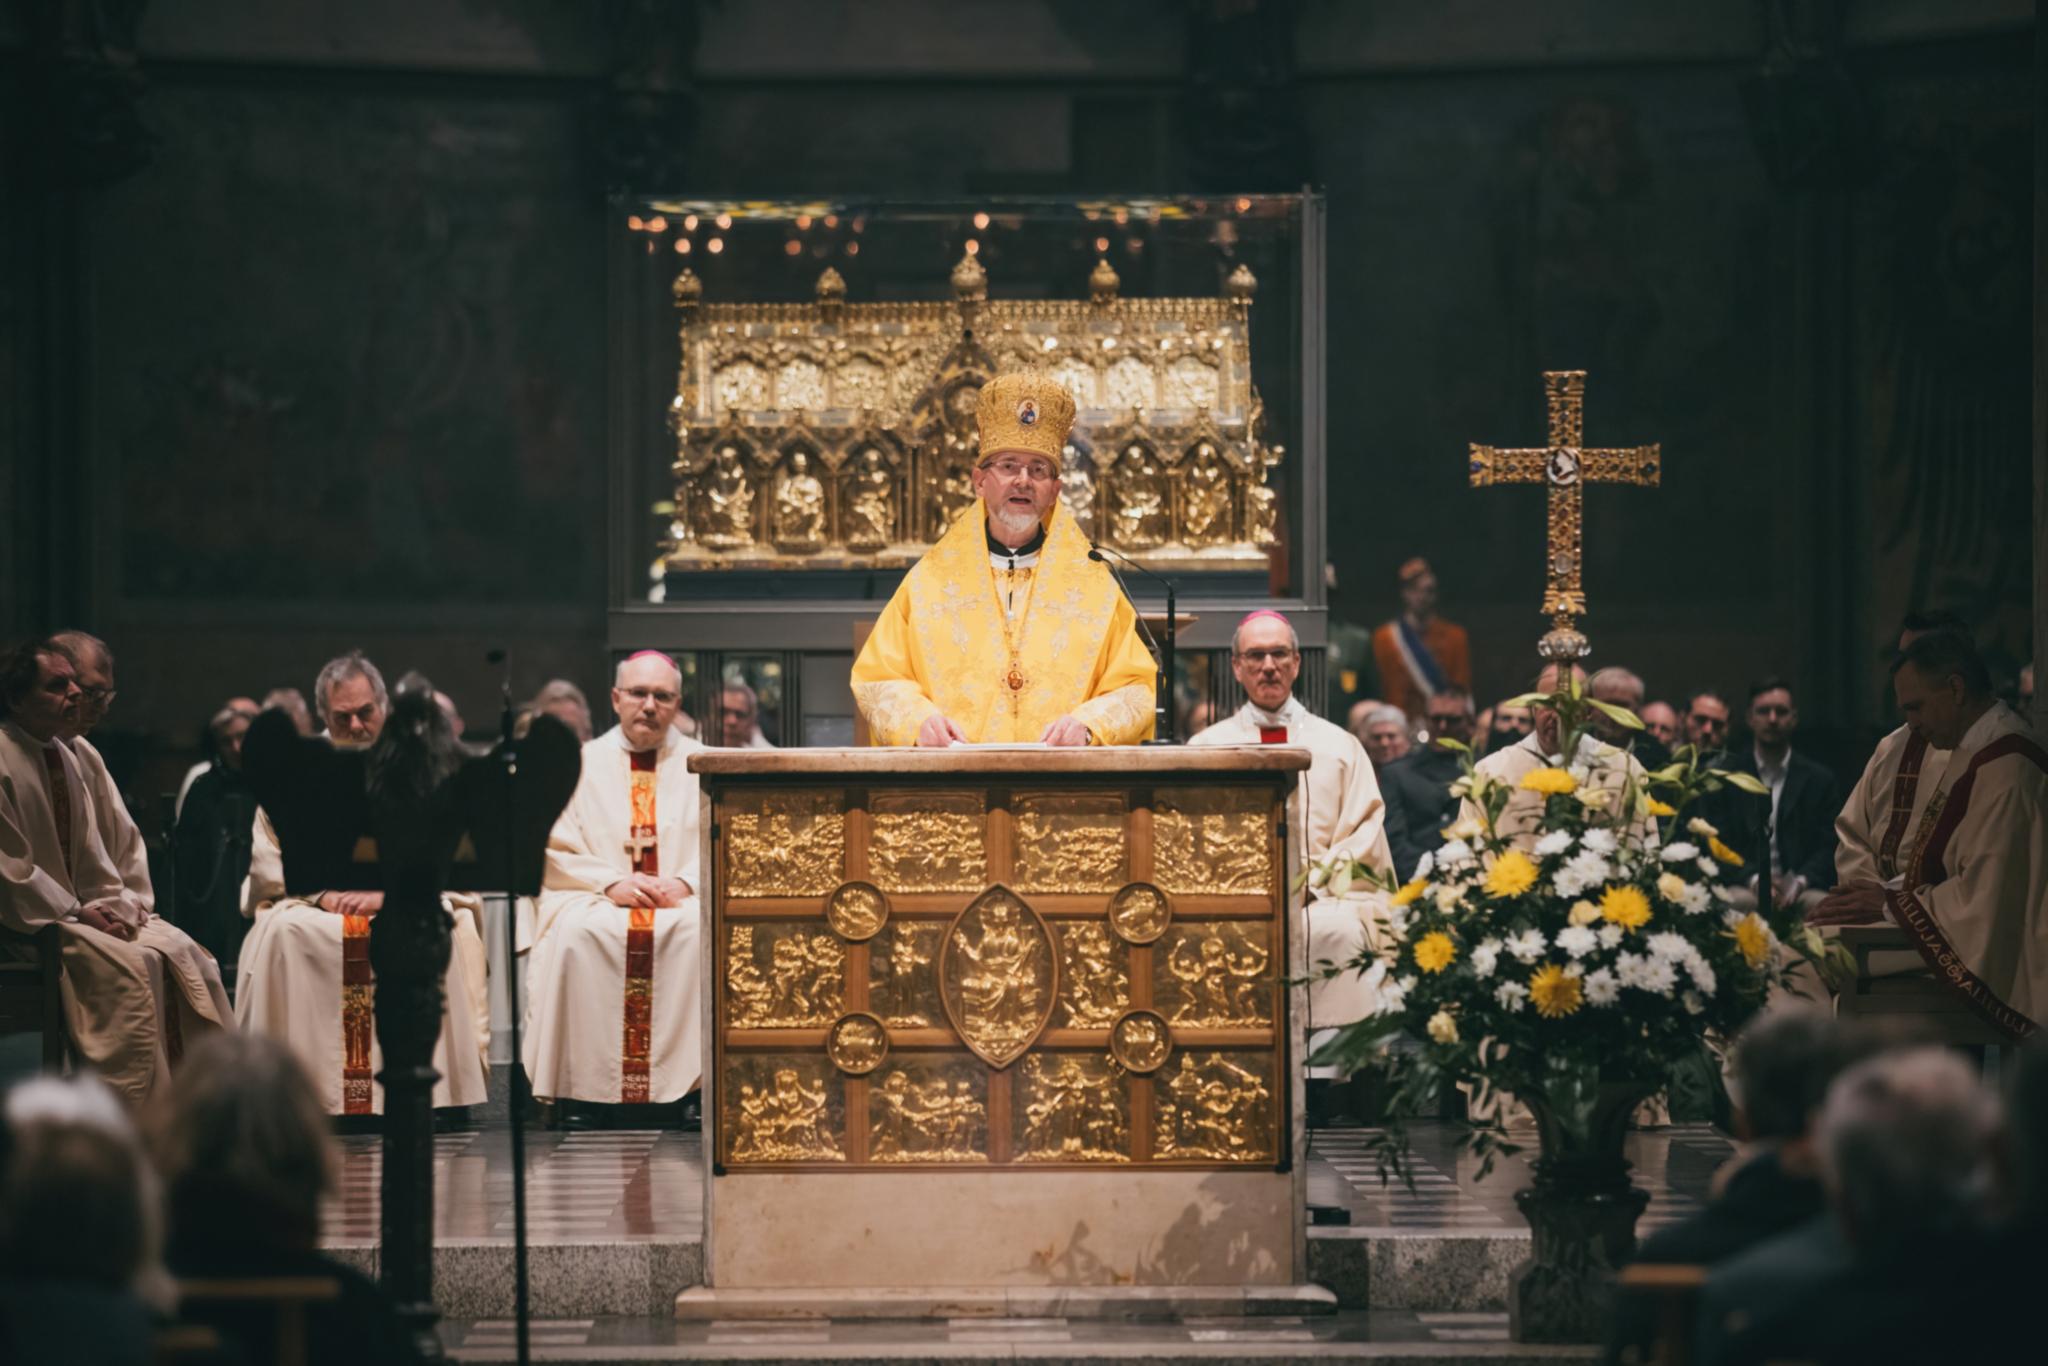 Hauptzelebrant beim traditionellen Aachener Karlsfest: Bischof Dr. Bodhan Dzyurakh, ukrainischer Bischof für Deutschland und Skandinavien